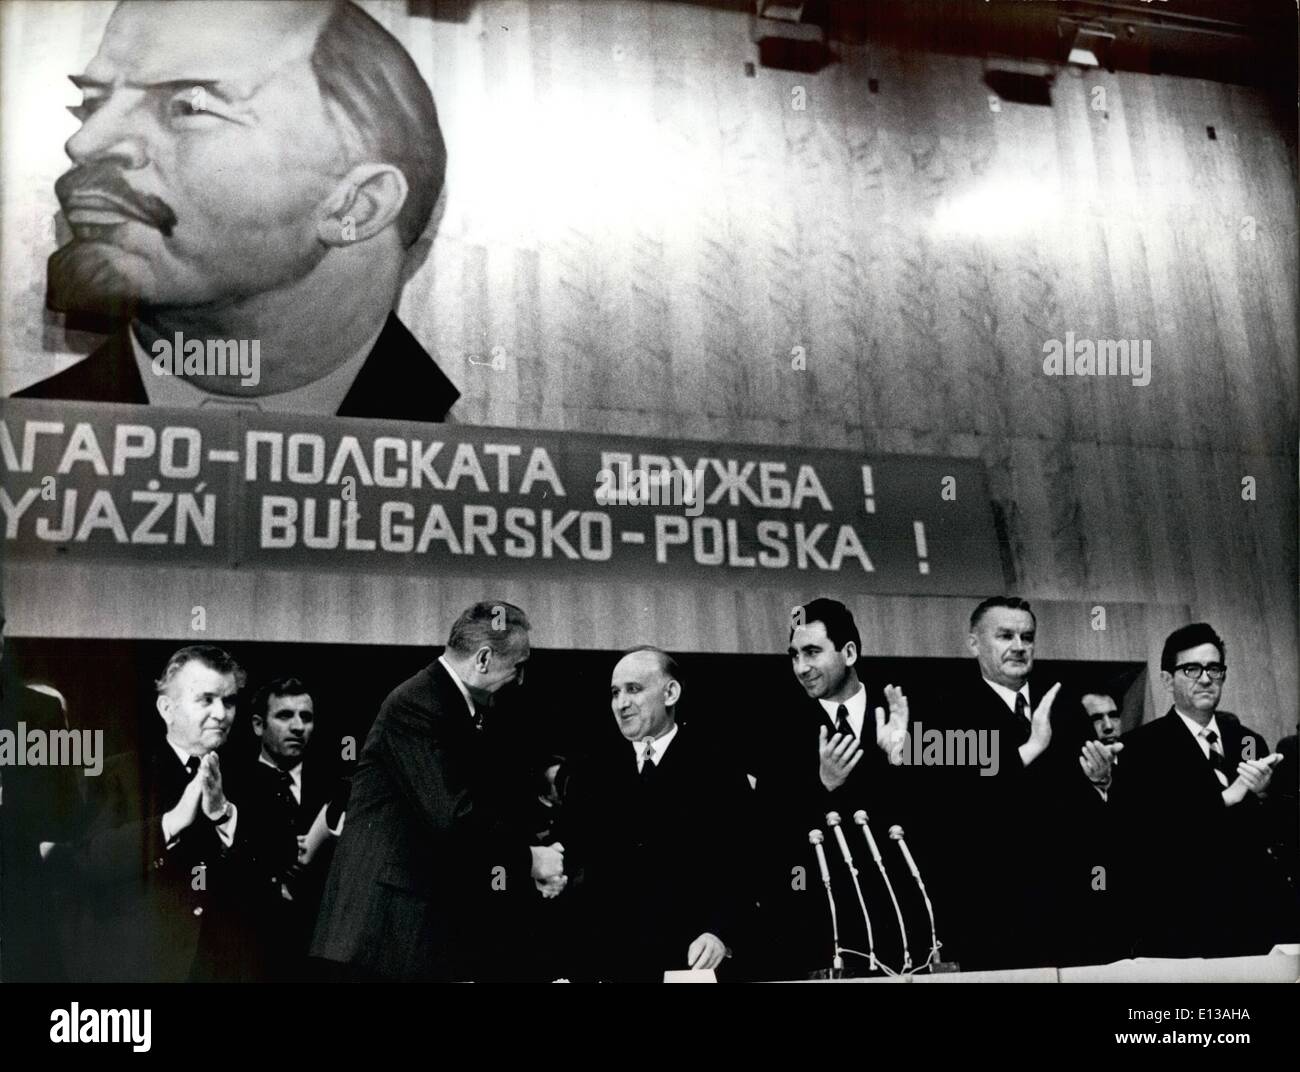 29 février 2012 - Parti polonais et délégation gouvernementale à Sofia - Réunion de l'Bulgarian-Polish l'amitié dans l'Universiada Banque D'Images